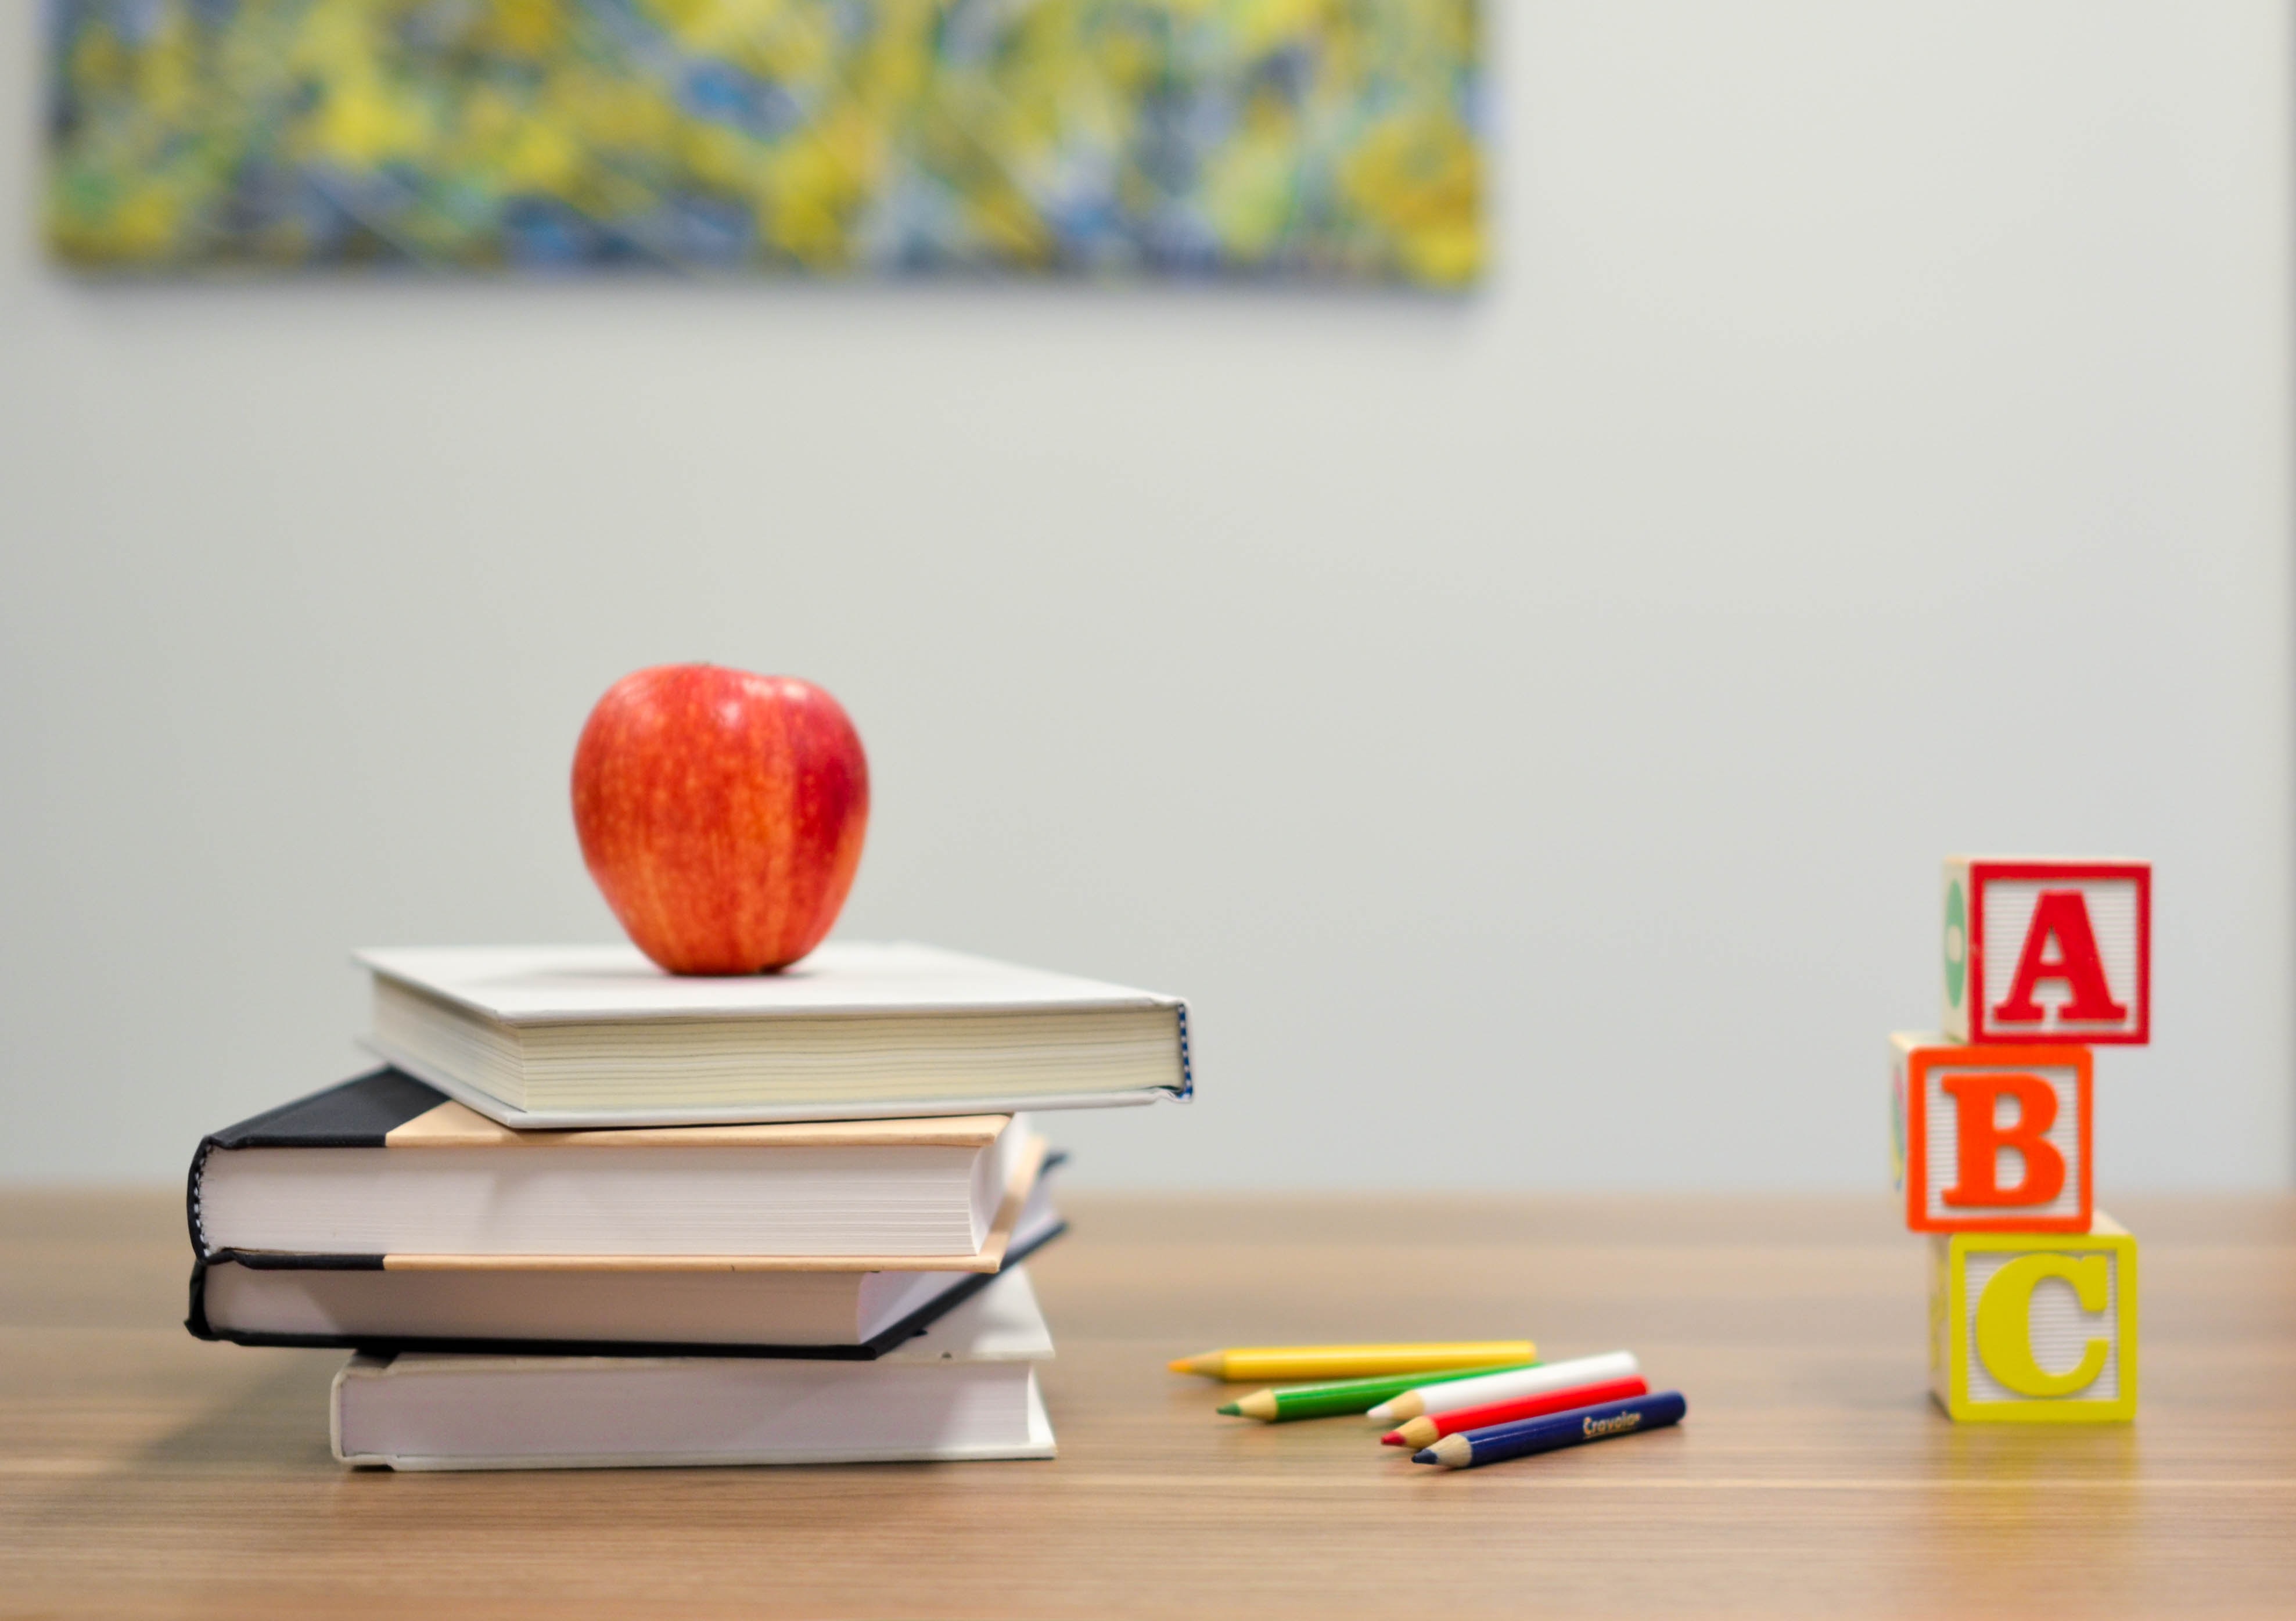 Edukacja - obrazek przedstawiający trzy książki, jabłko, kredki oraz klocki z literami alfabetu na biurku szkolnym